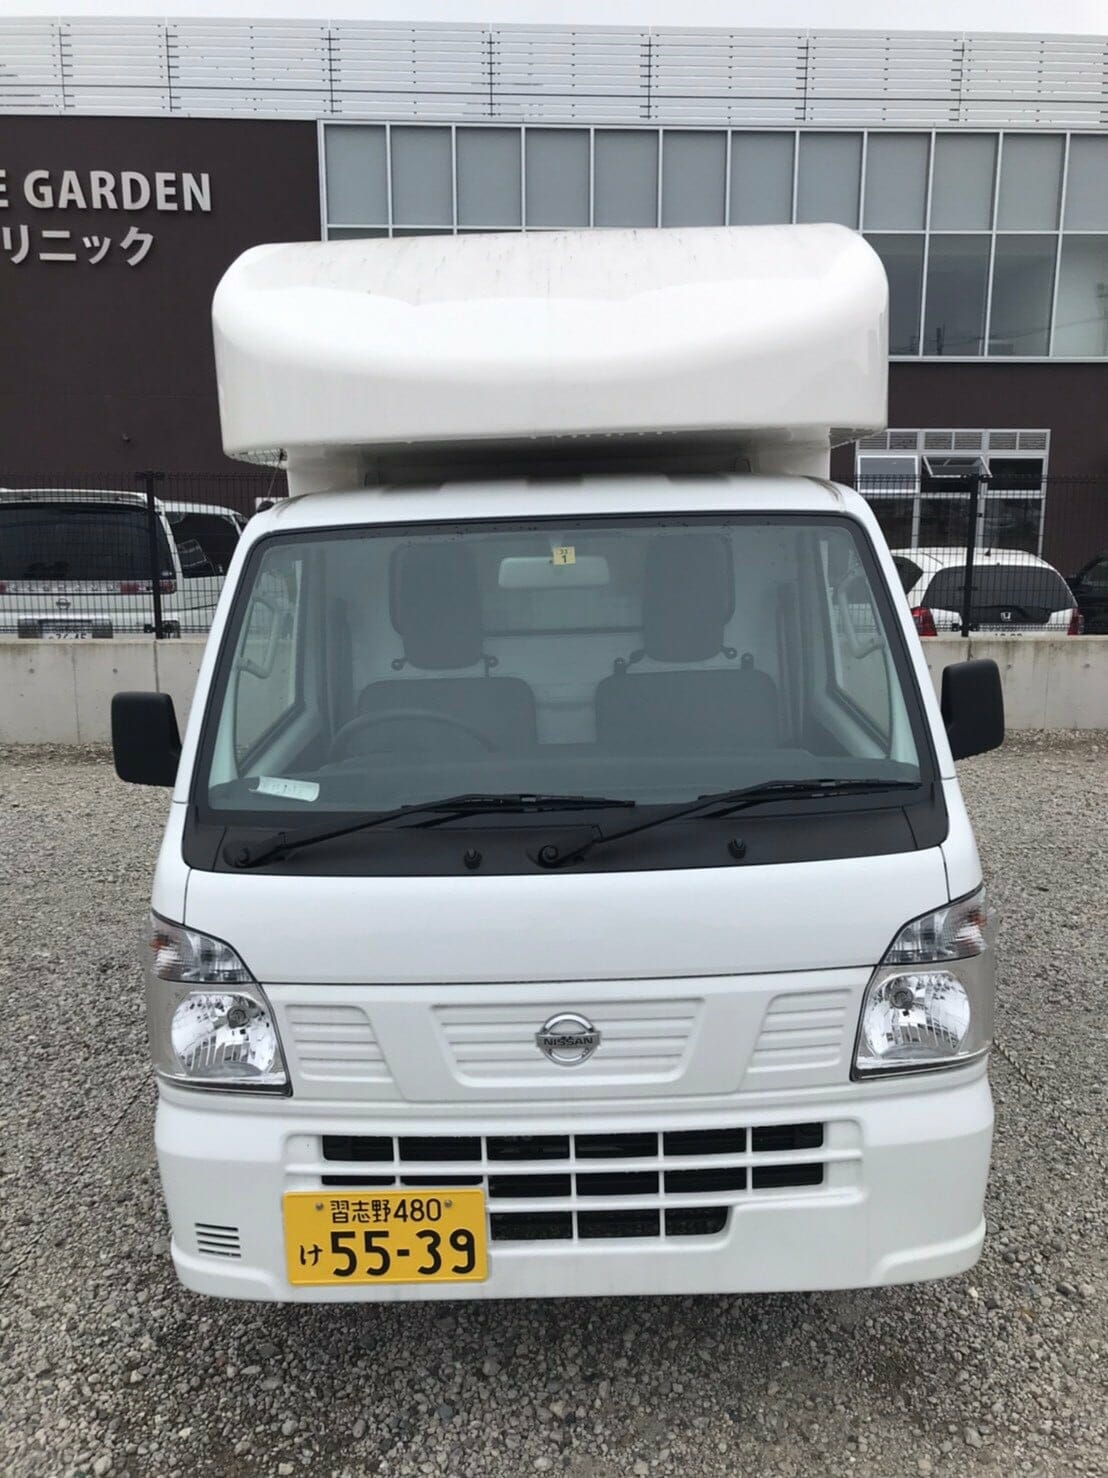 軽トラック Nissan クリッパーのキレイなキッチンカー 移動販売車 キッチンカー の製作 フードトラックカンパニー 公式